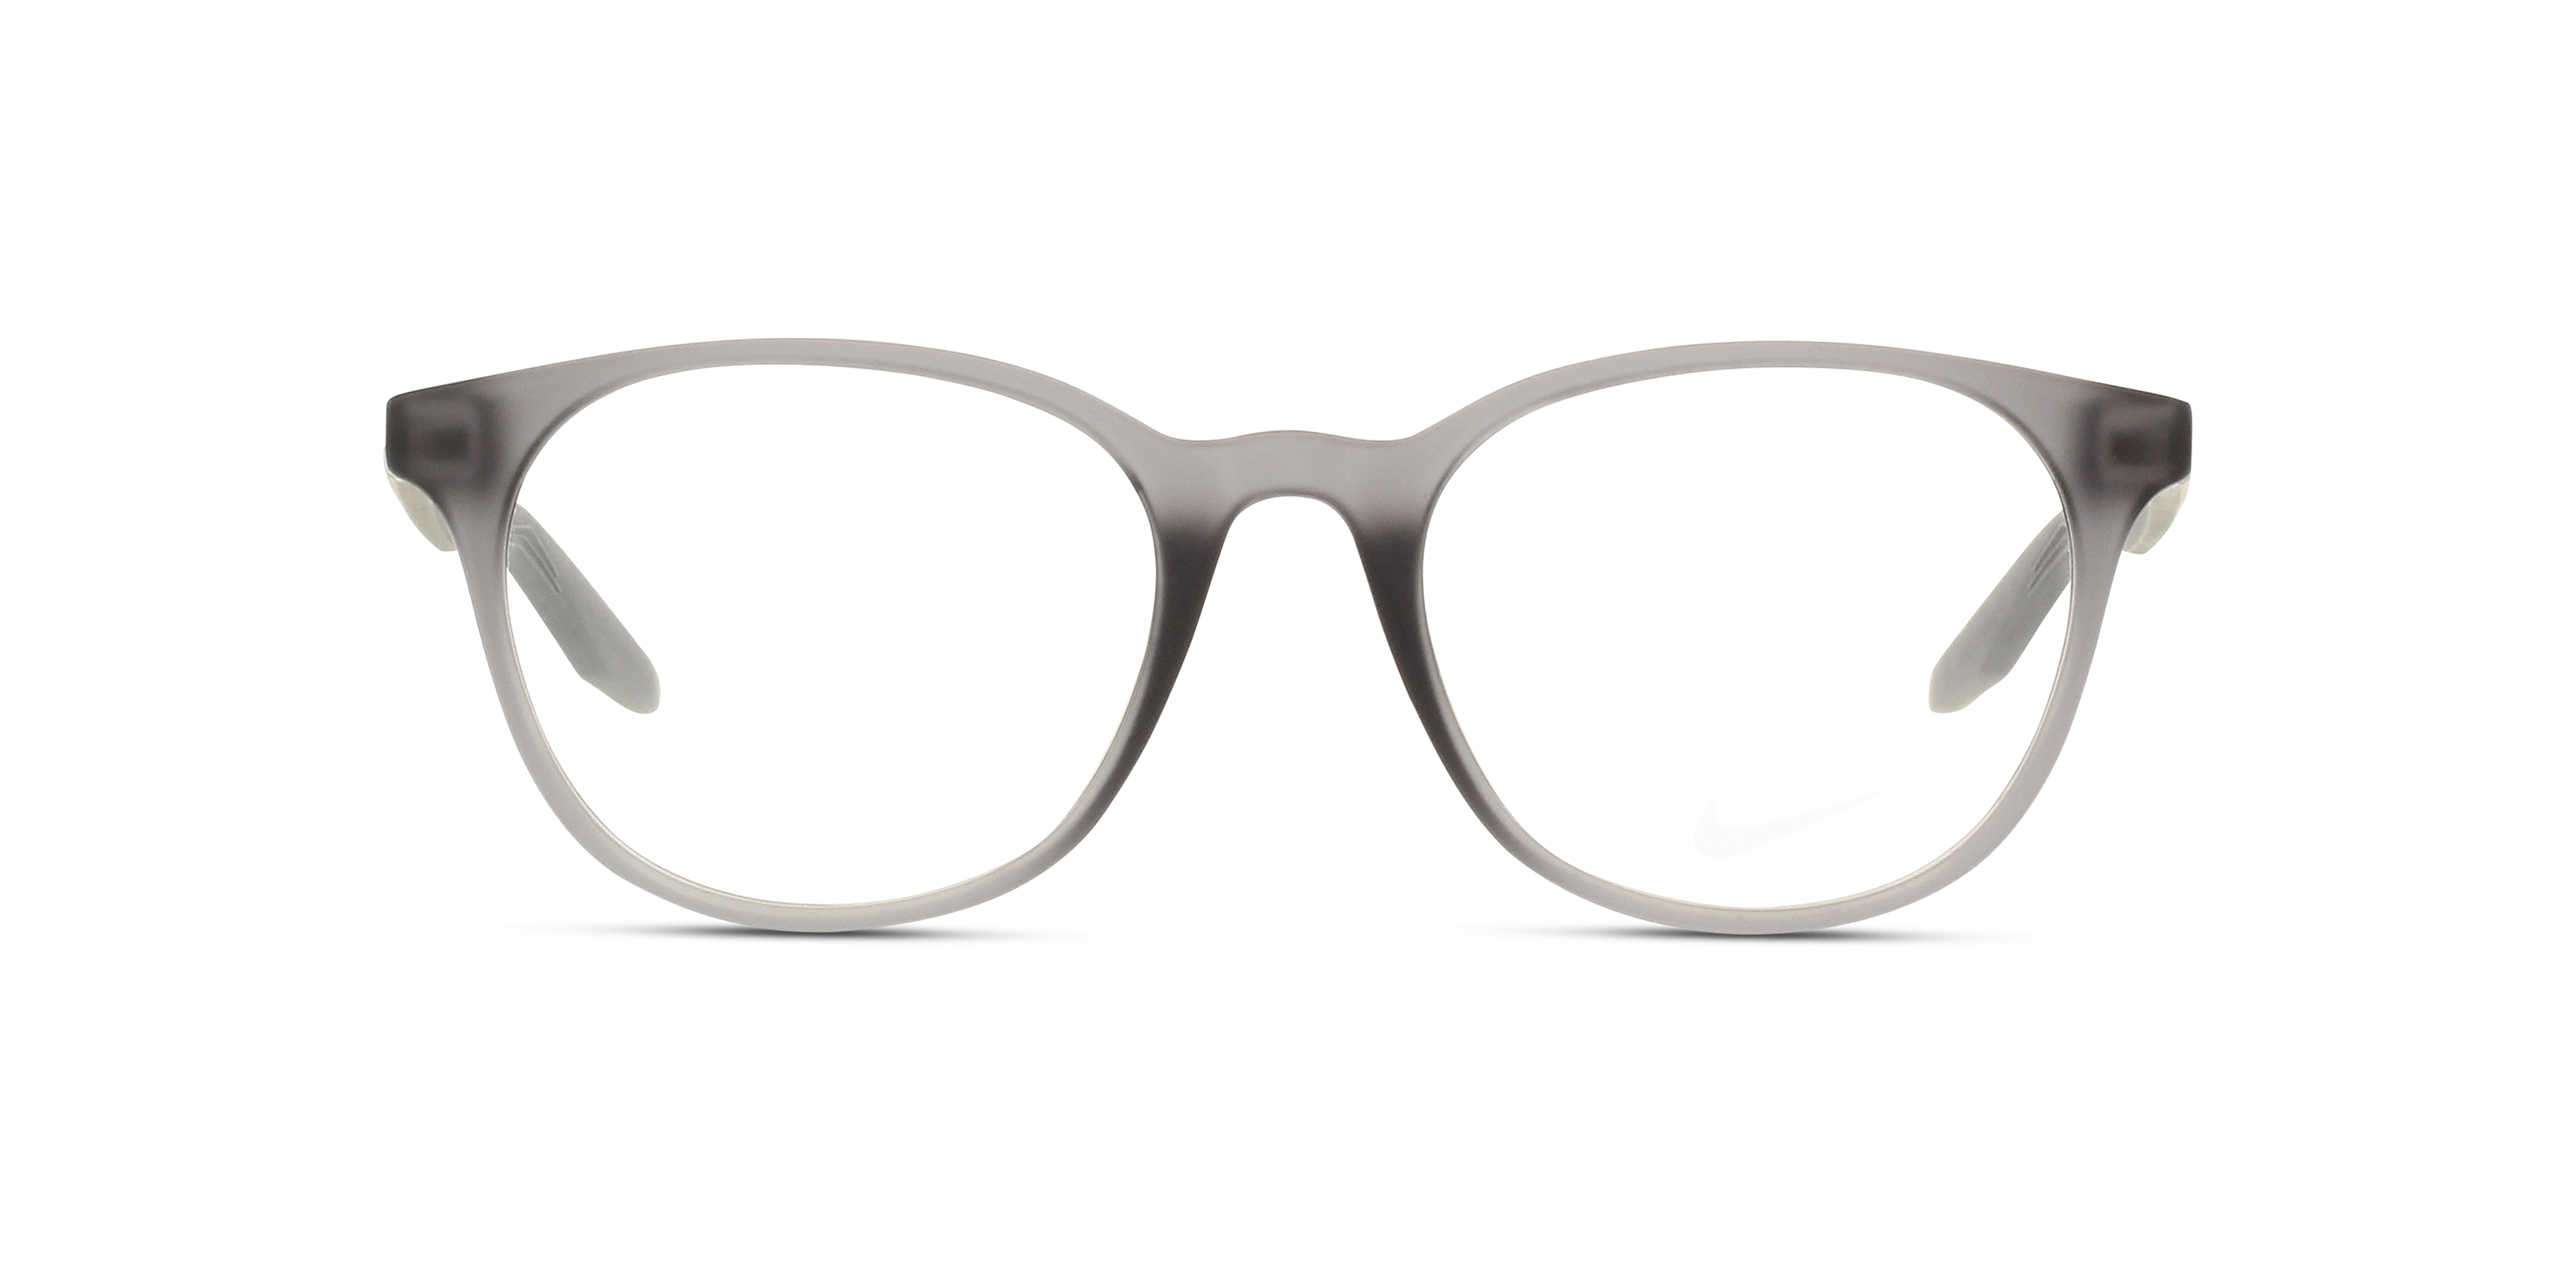 Présentation lunettes Nike enfant